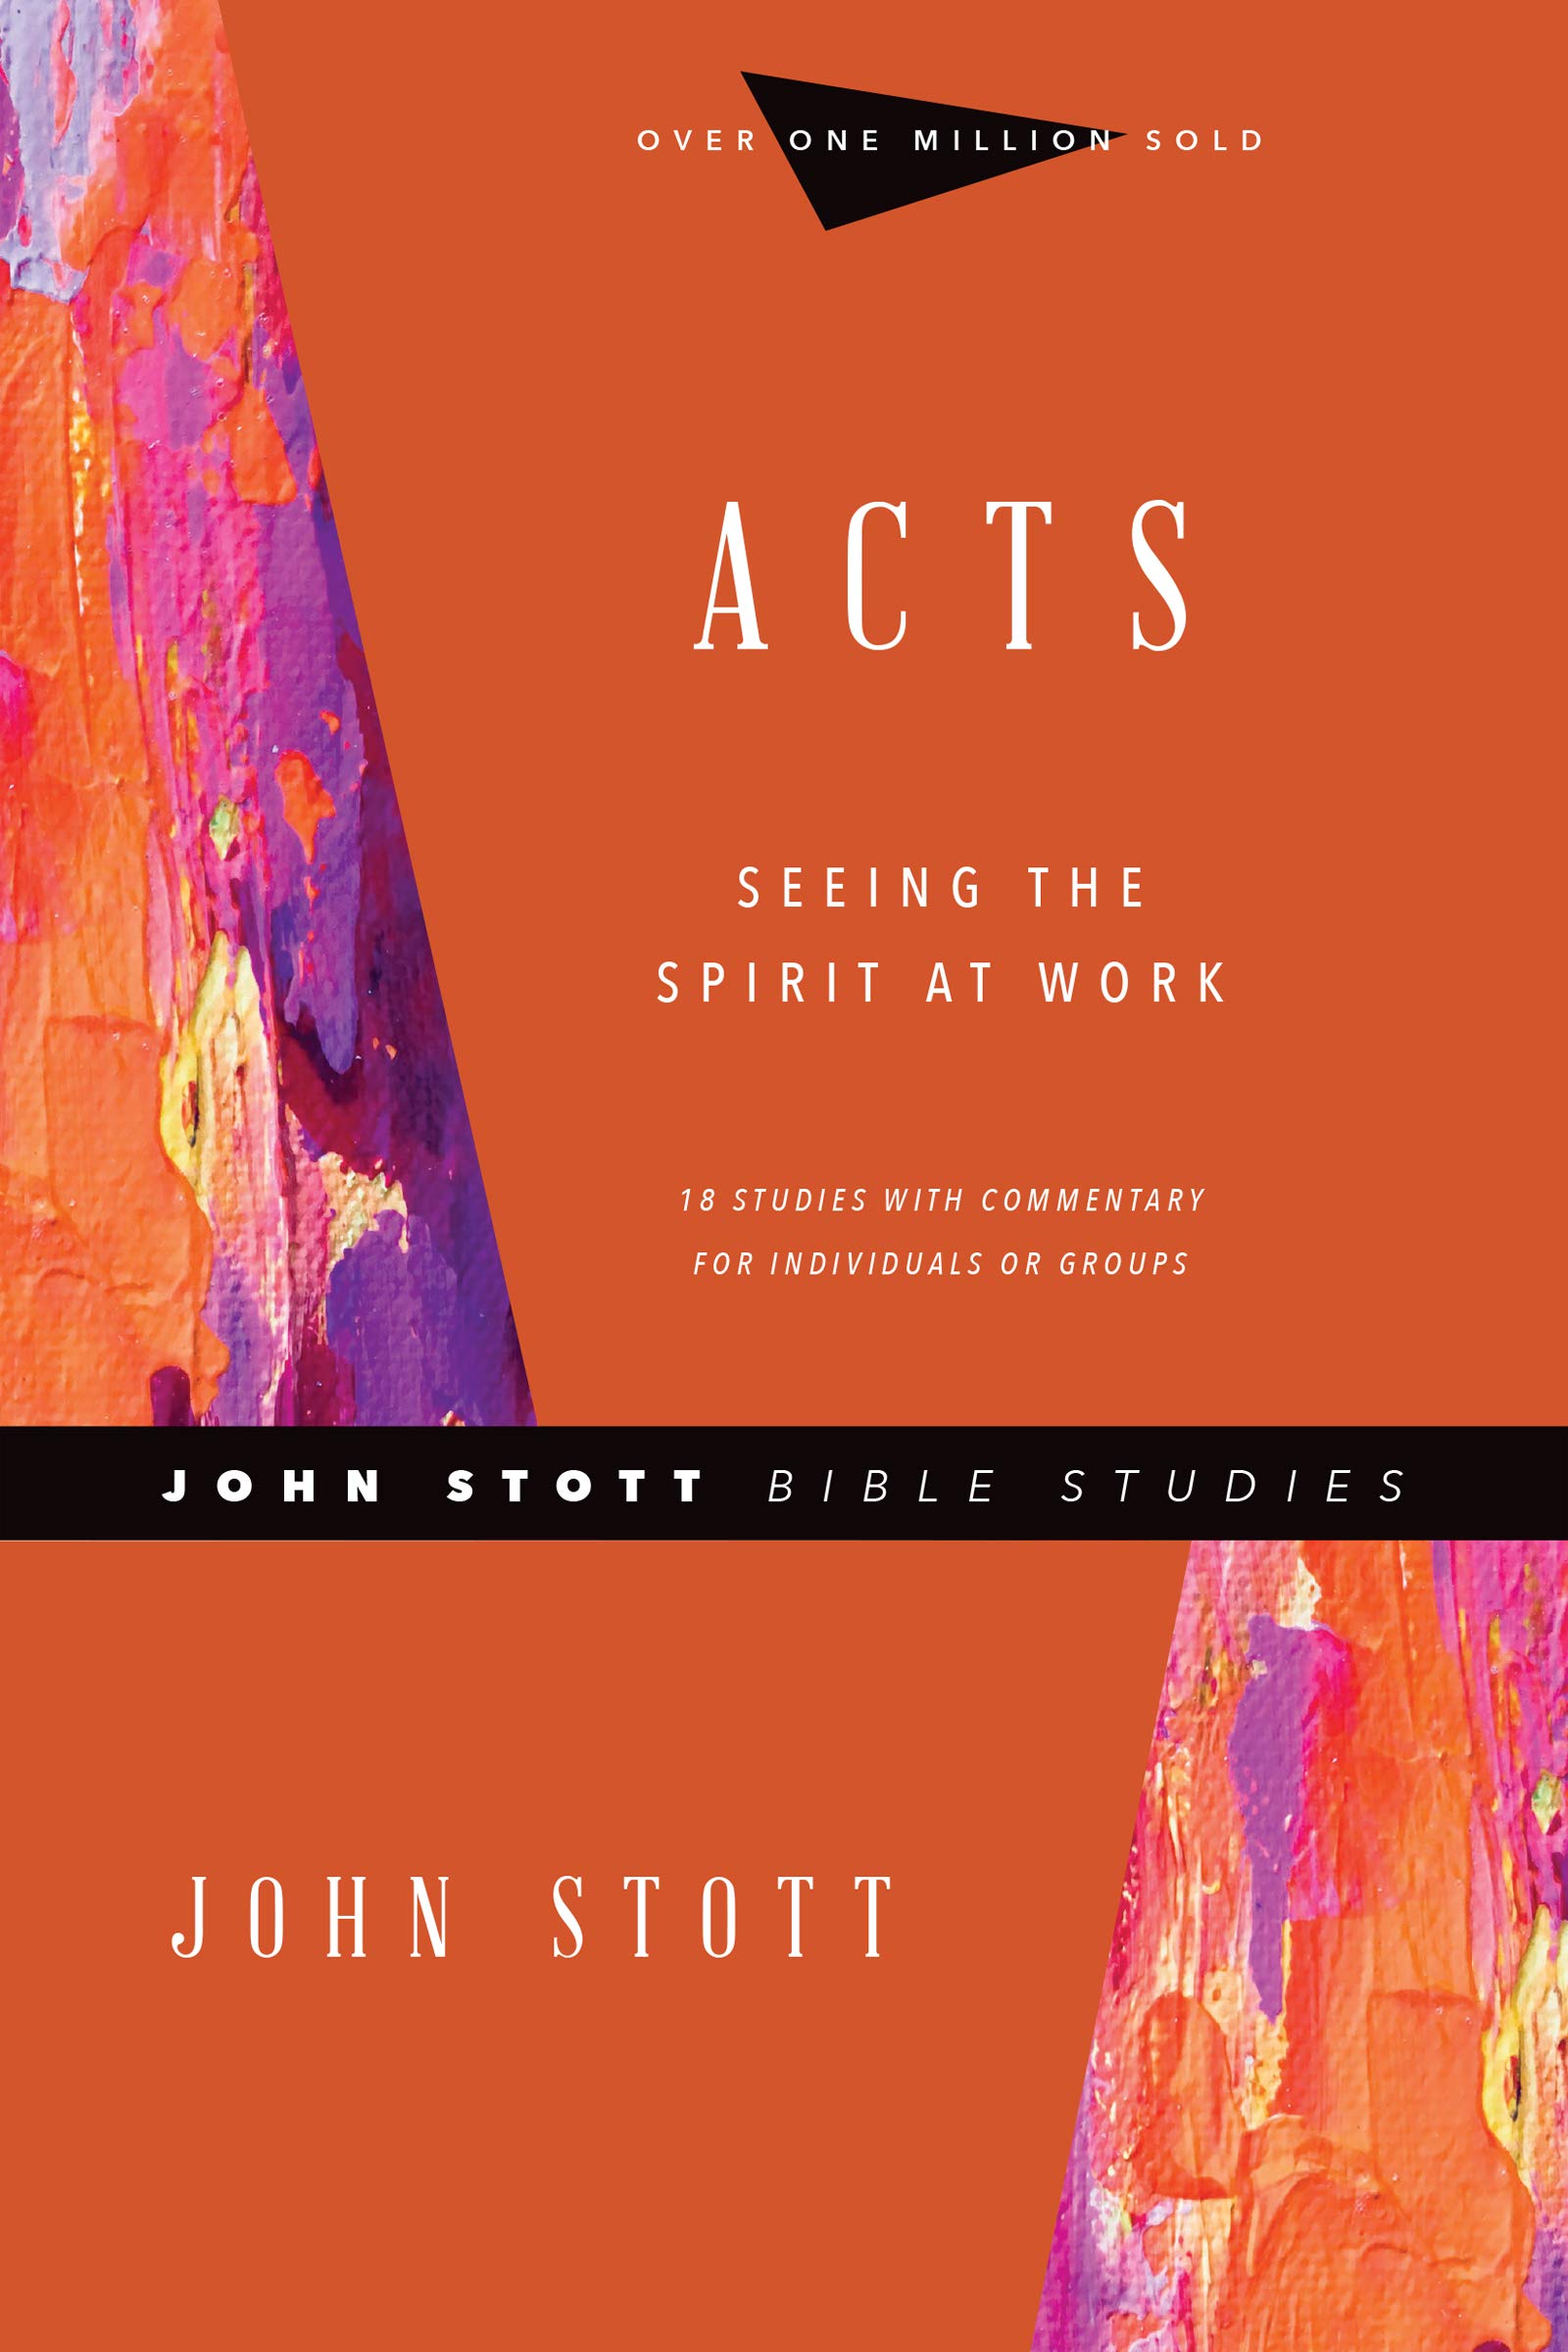 Acts: Seeing the Spirit at Work (John Stott Bible Studies)